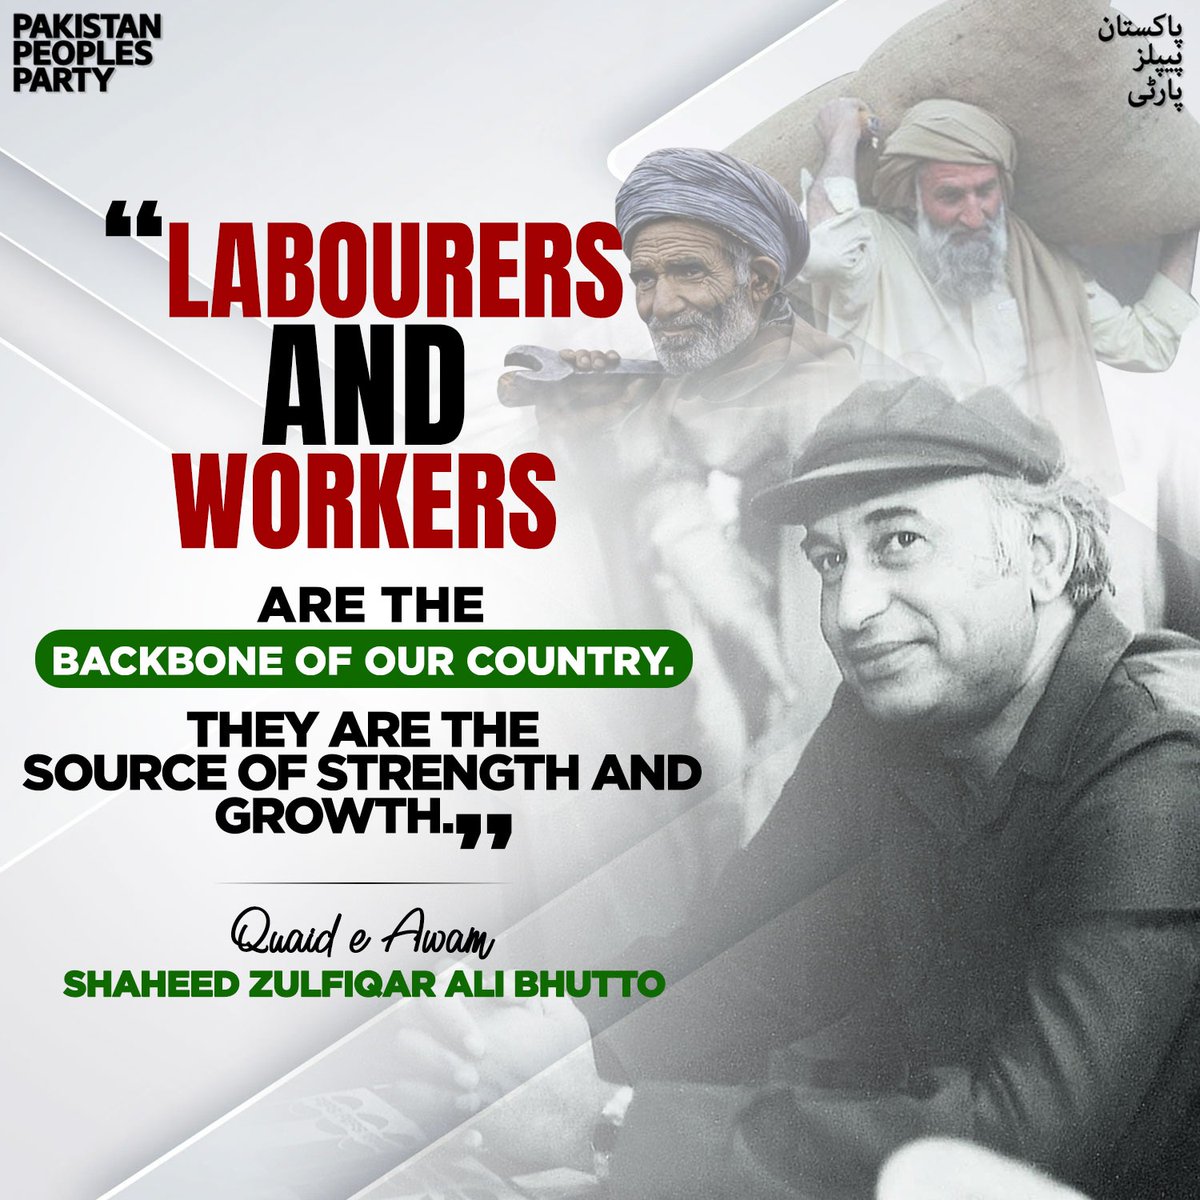 #PPPDigitalKSK
Labourers Day
#PPPDigitalKSK